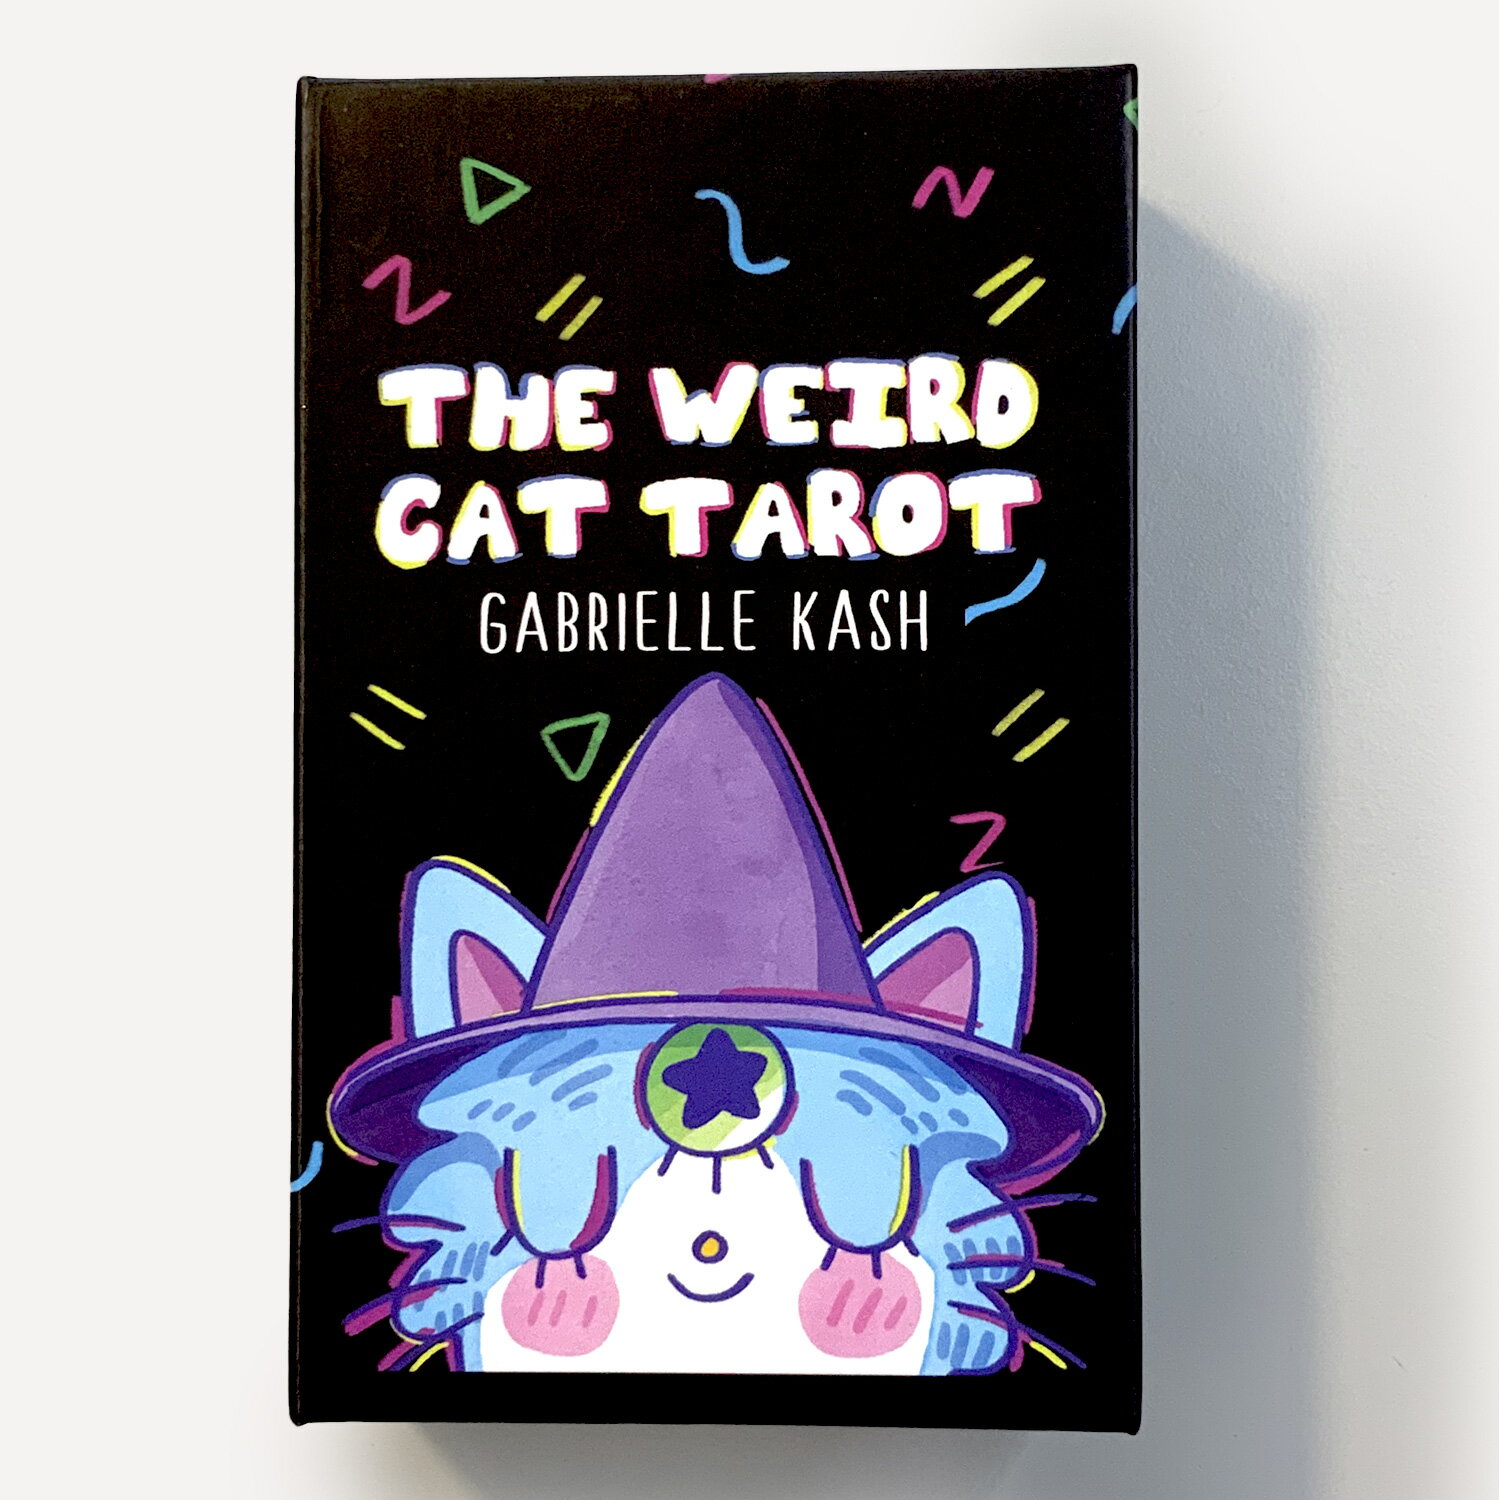 ニューヨークで活躍中のイラストレーター 在庫あり ストップモーションアニメーターのガブリエル カッシュの ザ ウィアードキャット タロット タロットカード ウィアード 正規品 Weird Cat 送料込み Tarot The 日本語小冊子 キャット